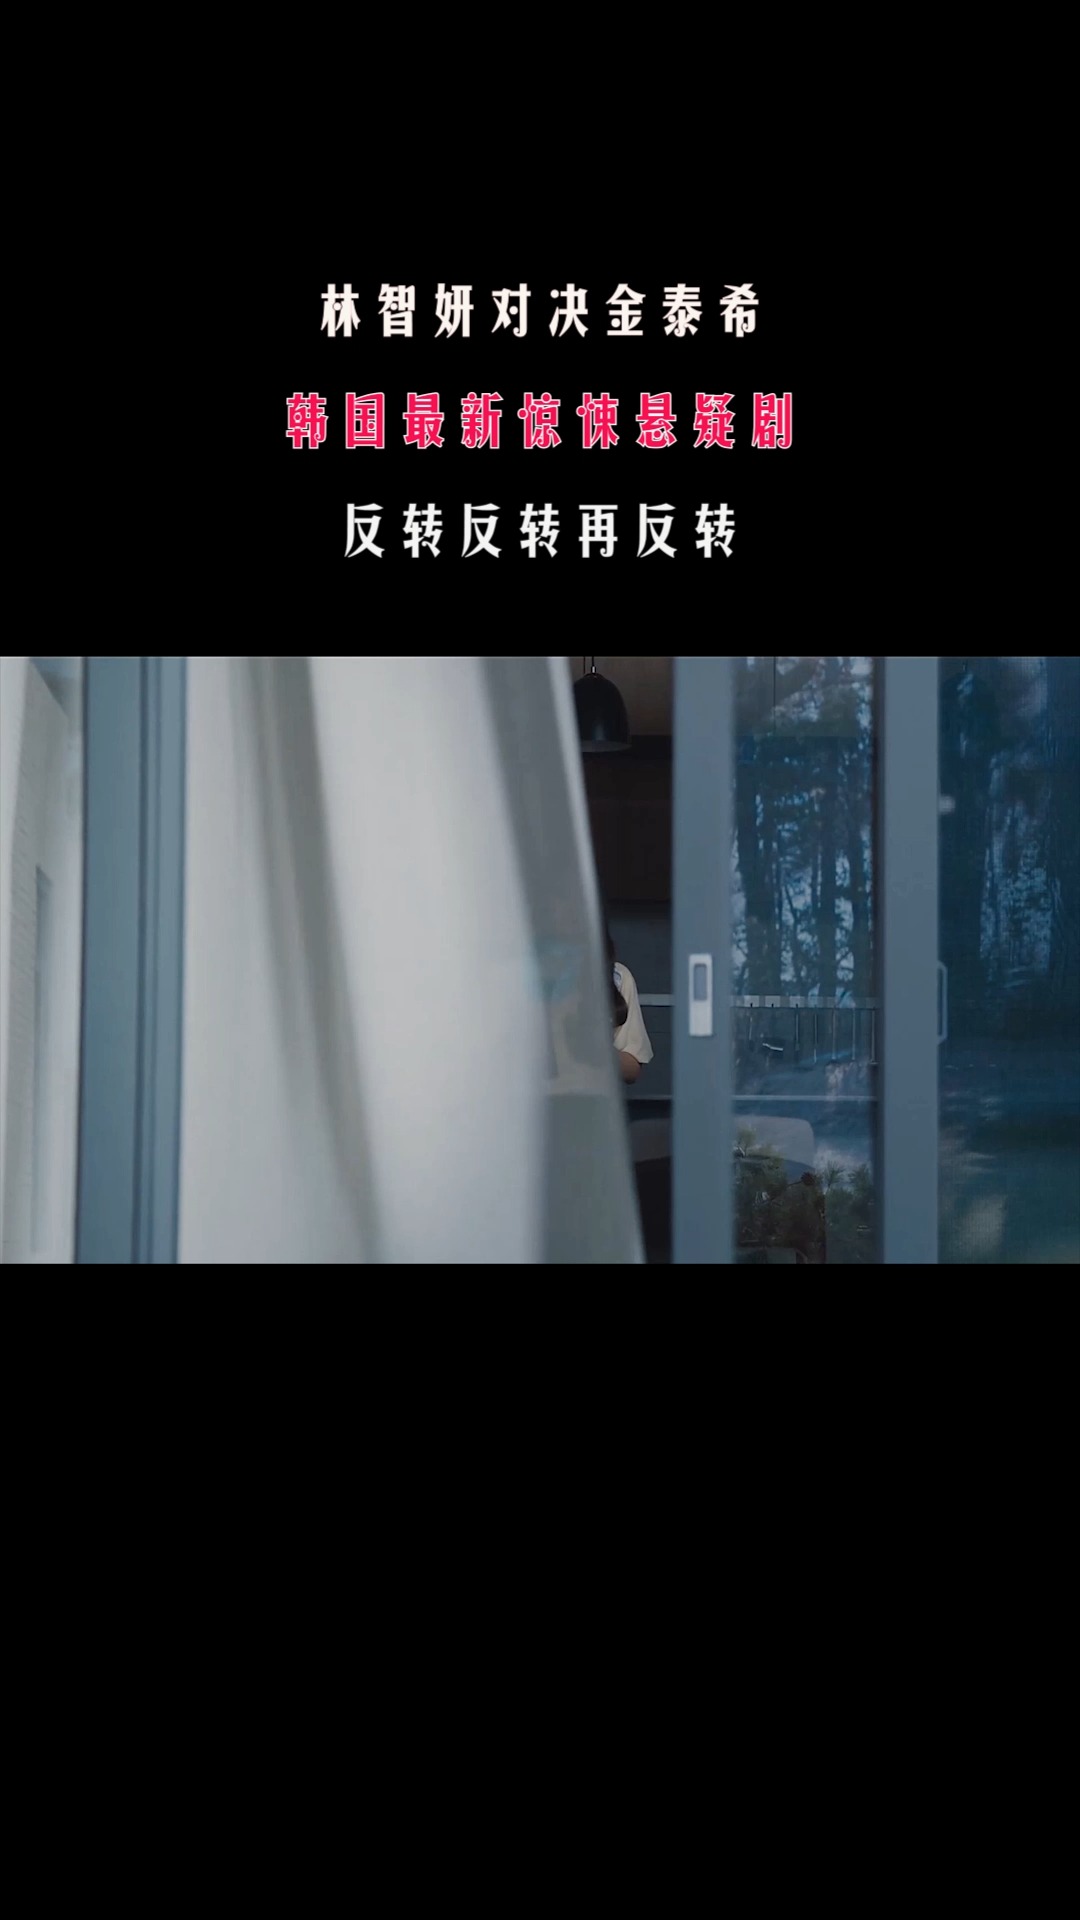 第24集：林智妍对决金泰希，韩国最新惊悚悬疑剧，反转反转再反转。 #电影解说#剧情片#悬疑片